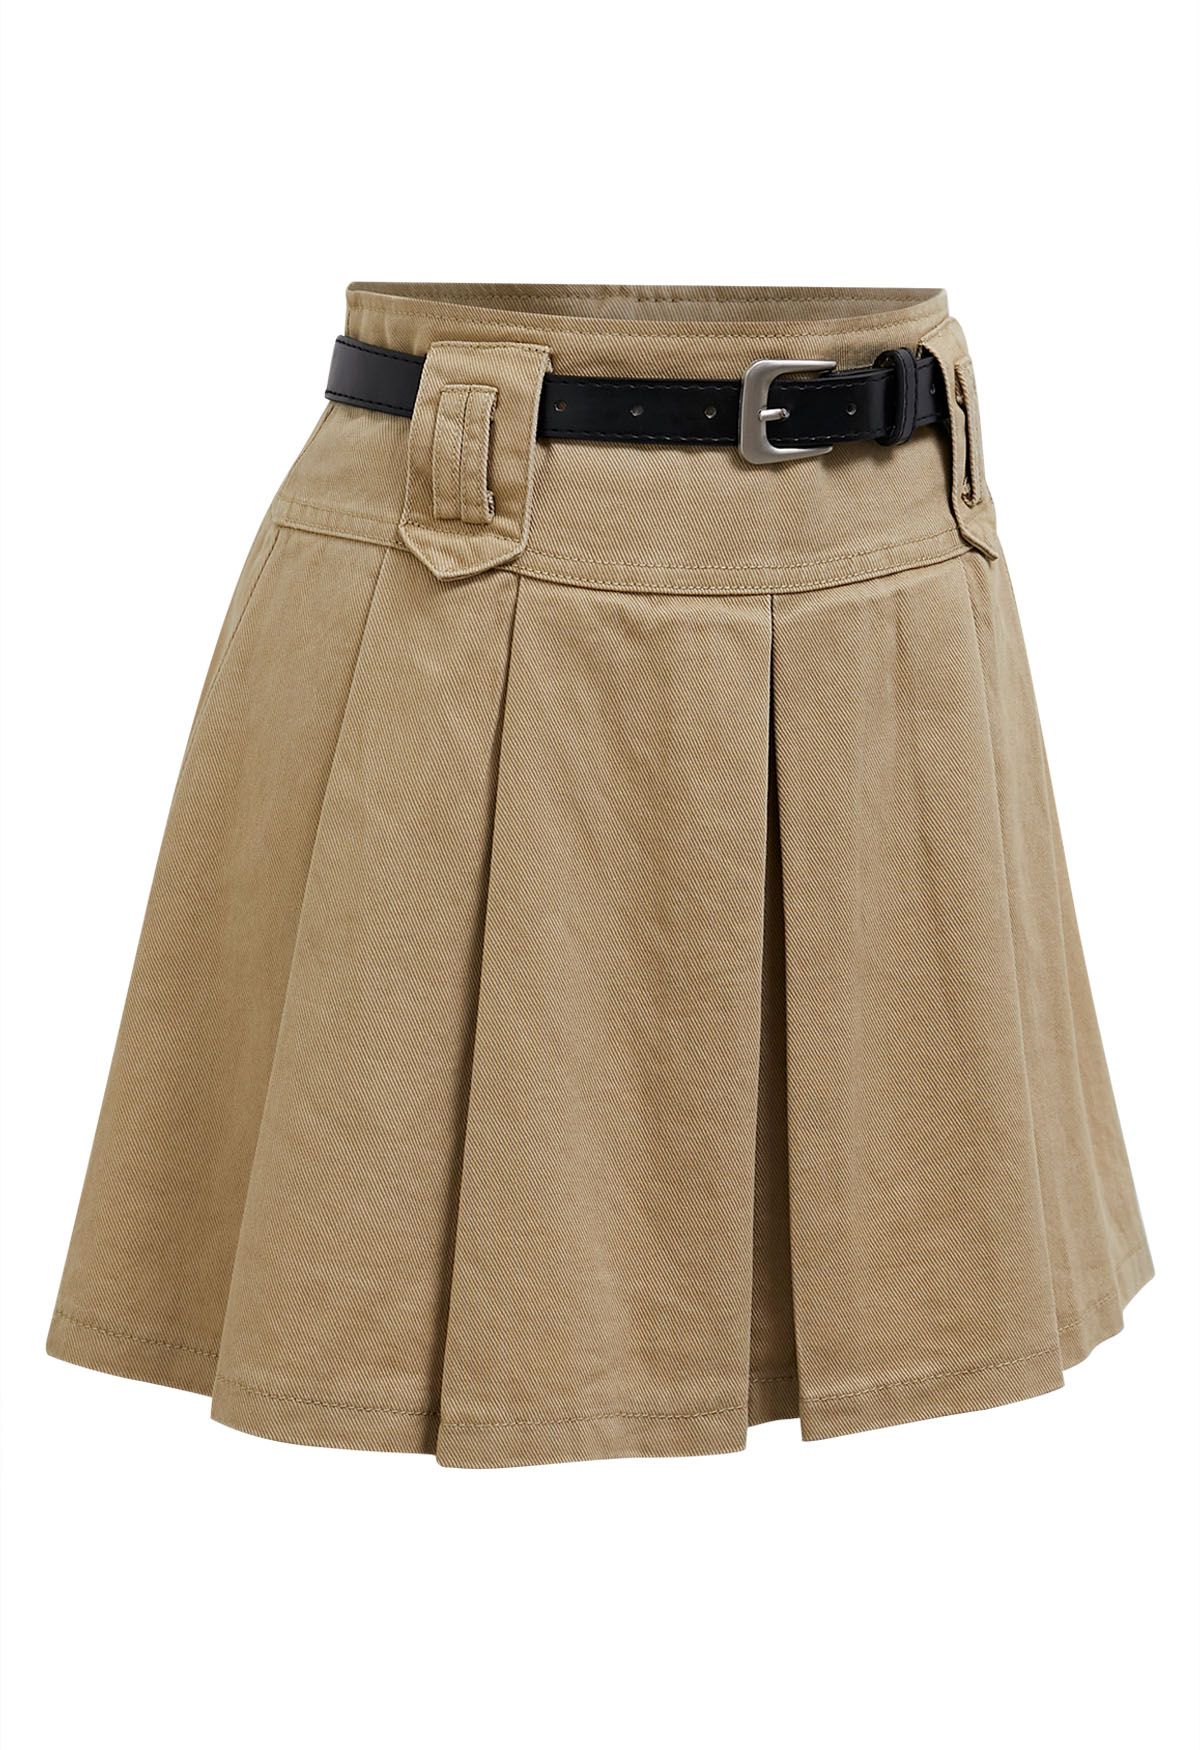 Classic Pleat Denim Mini Skirt with Belt in Light Tan